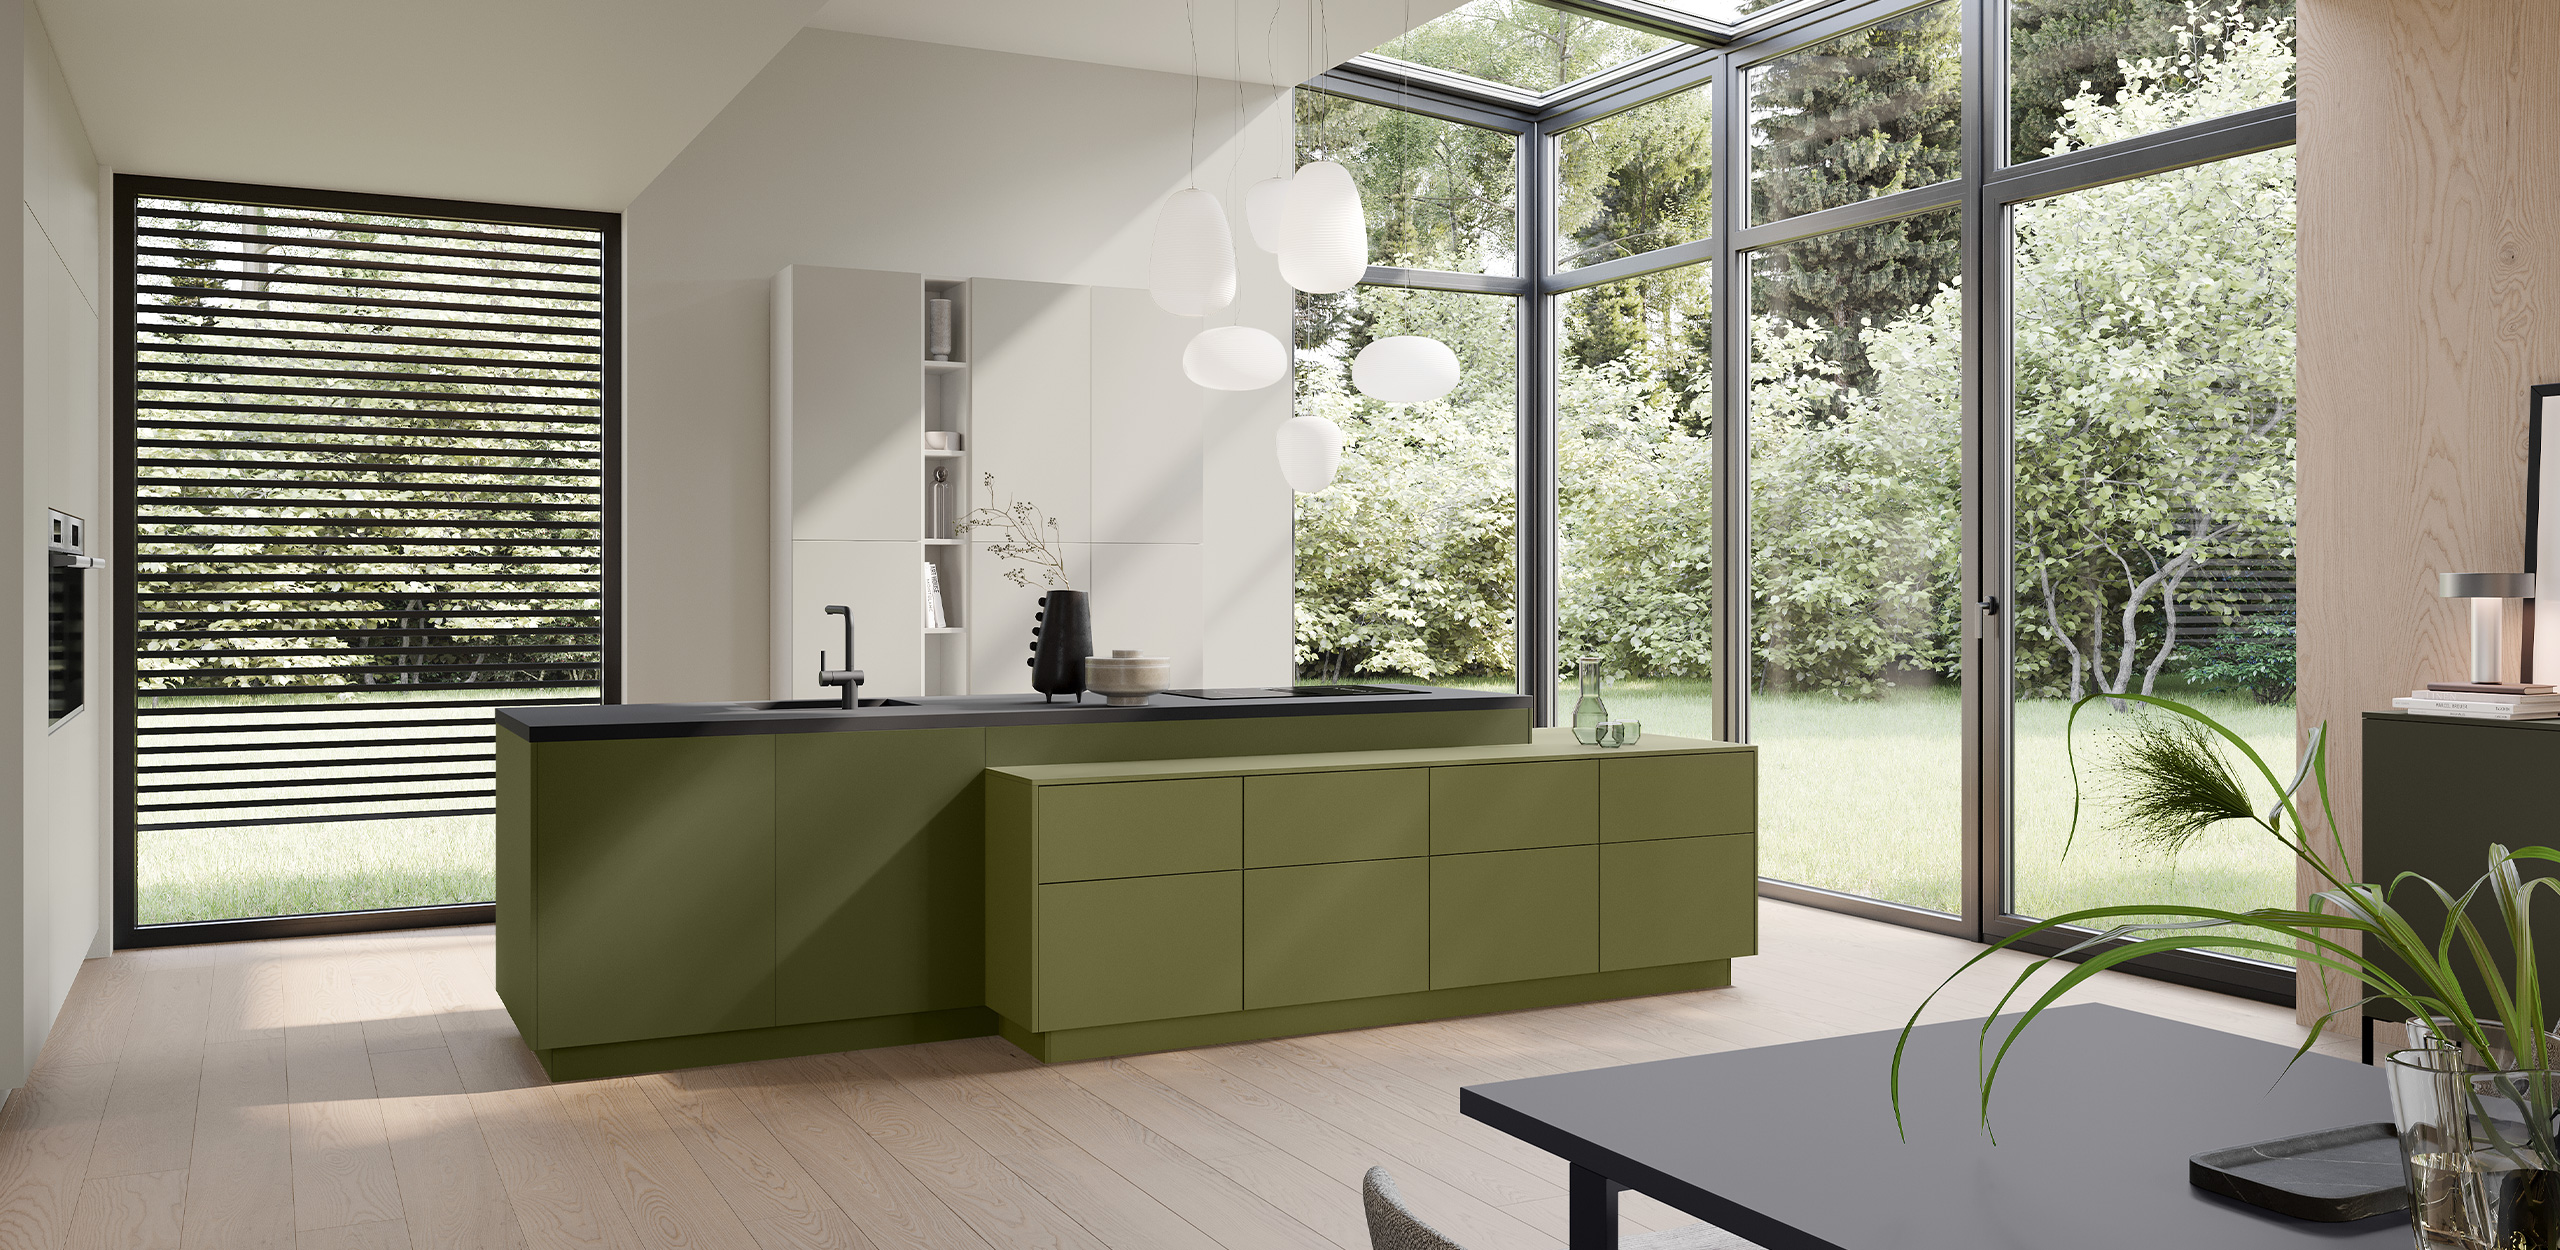 Frontalansicht olivgrüner asymmetrischer Küchenblock über Eck, im Hintergrund seidengraue Hochschränke